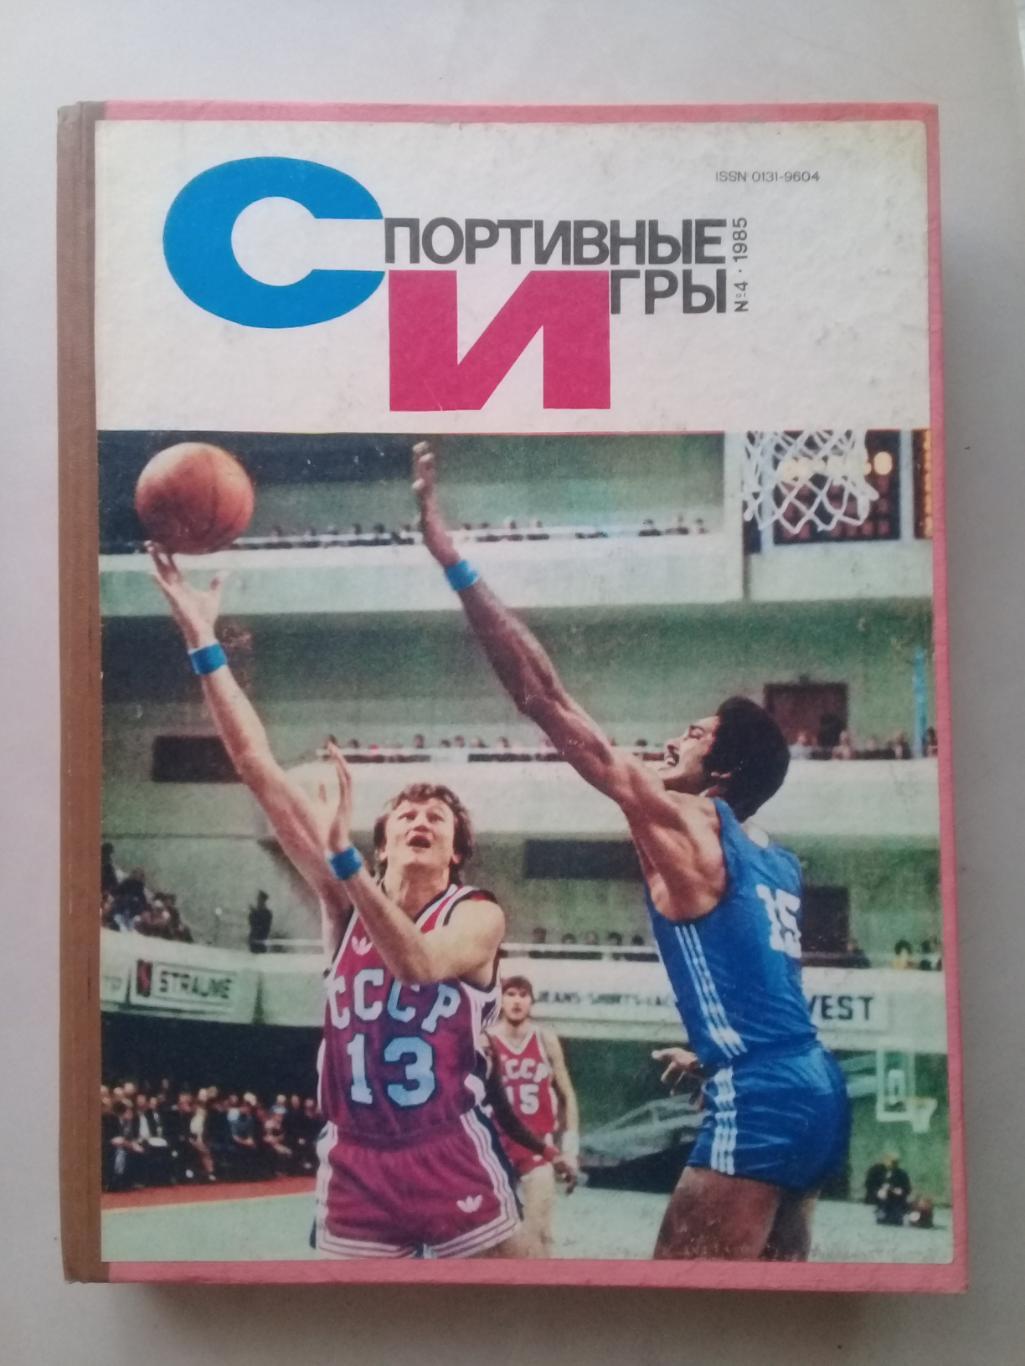 (Только для dk7586) Журнал Спортивные игры 1985 год. Годовой комплект.